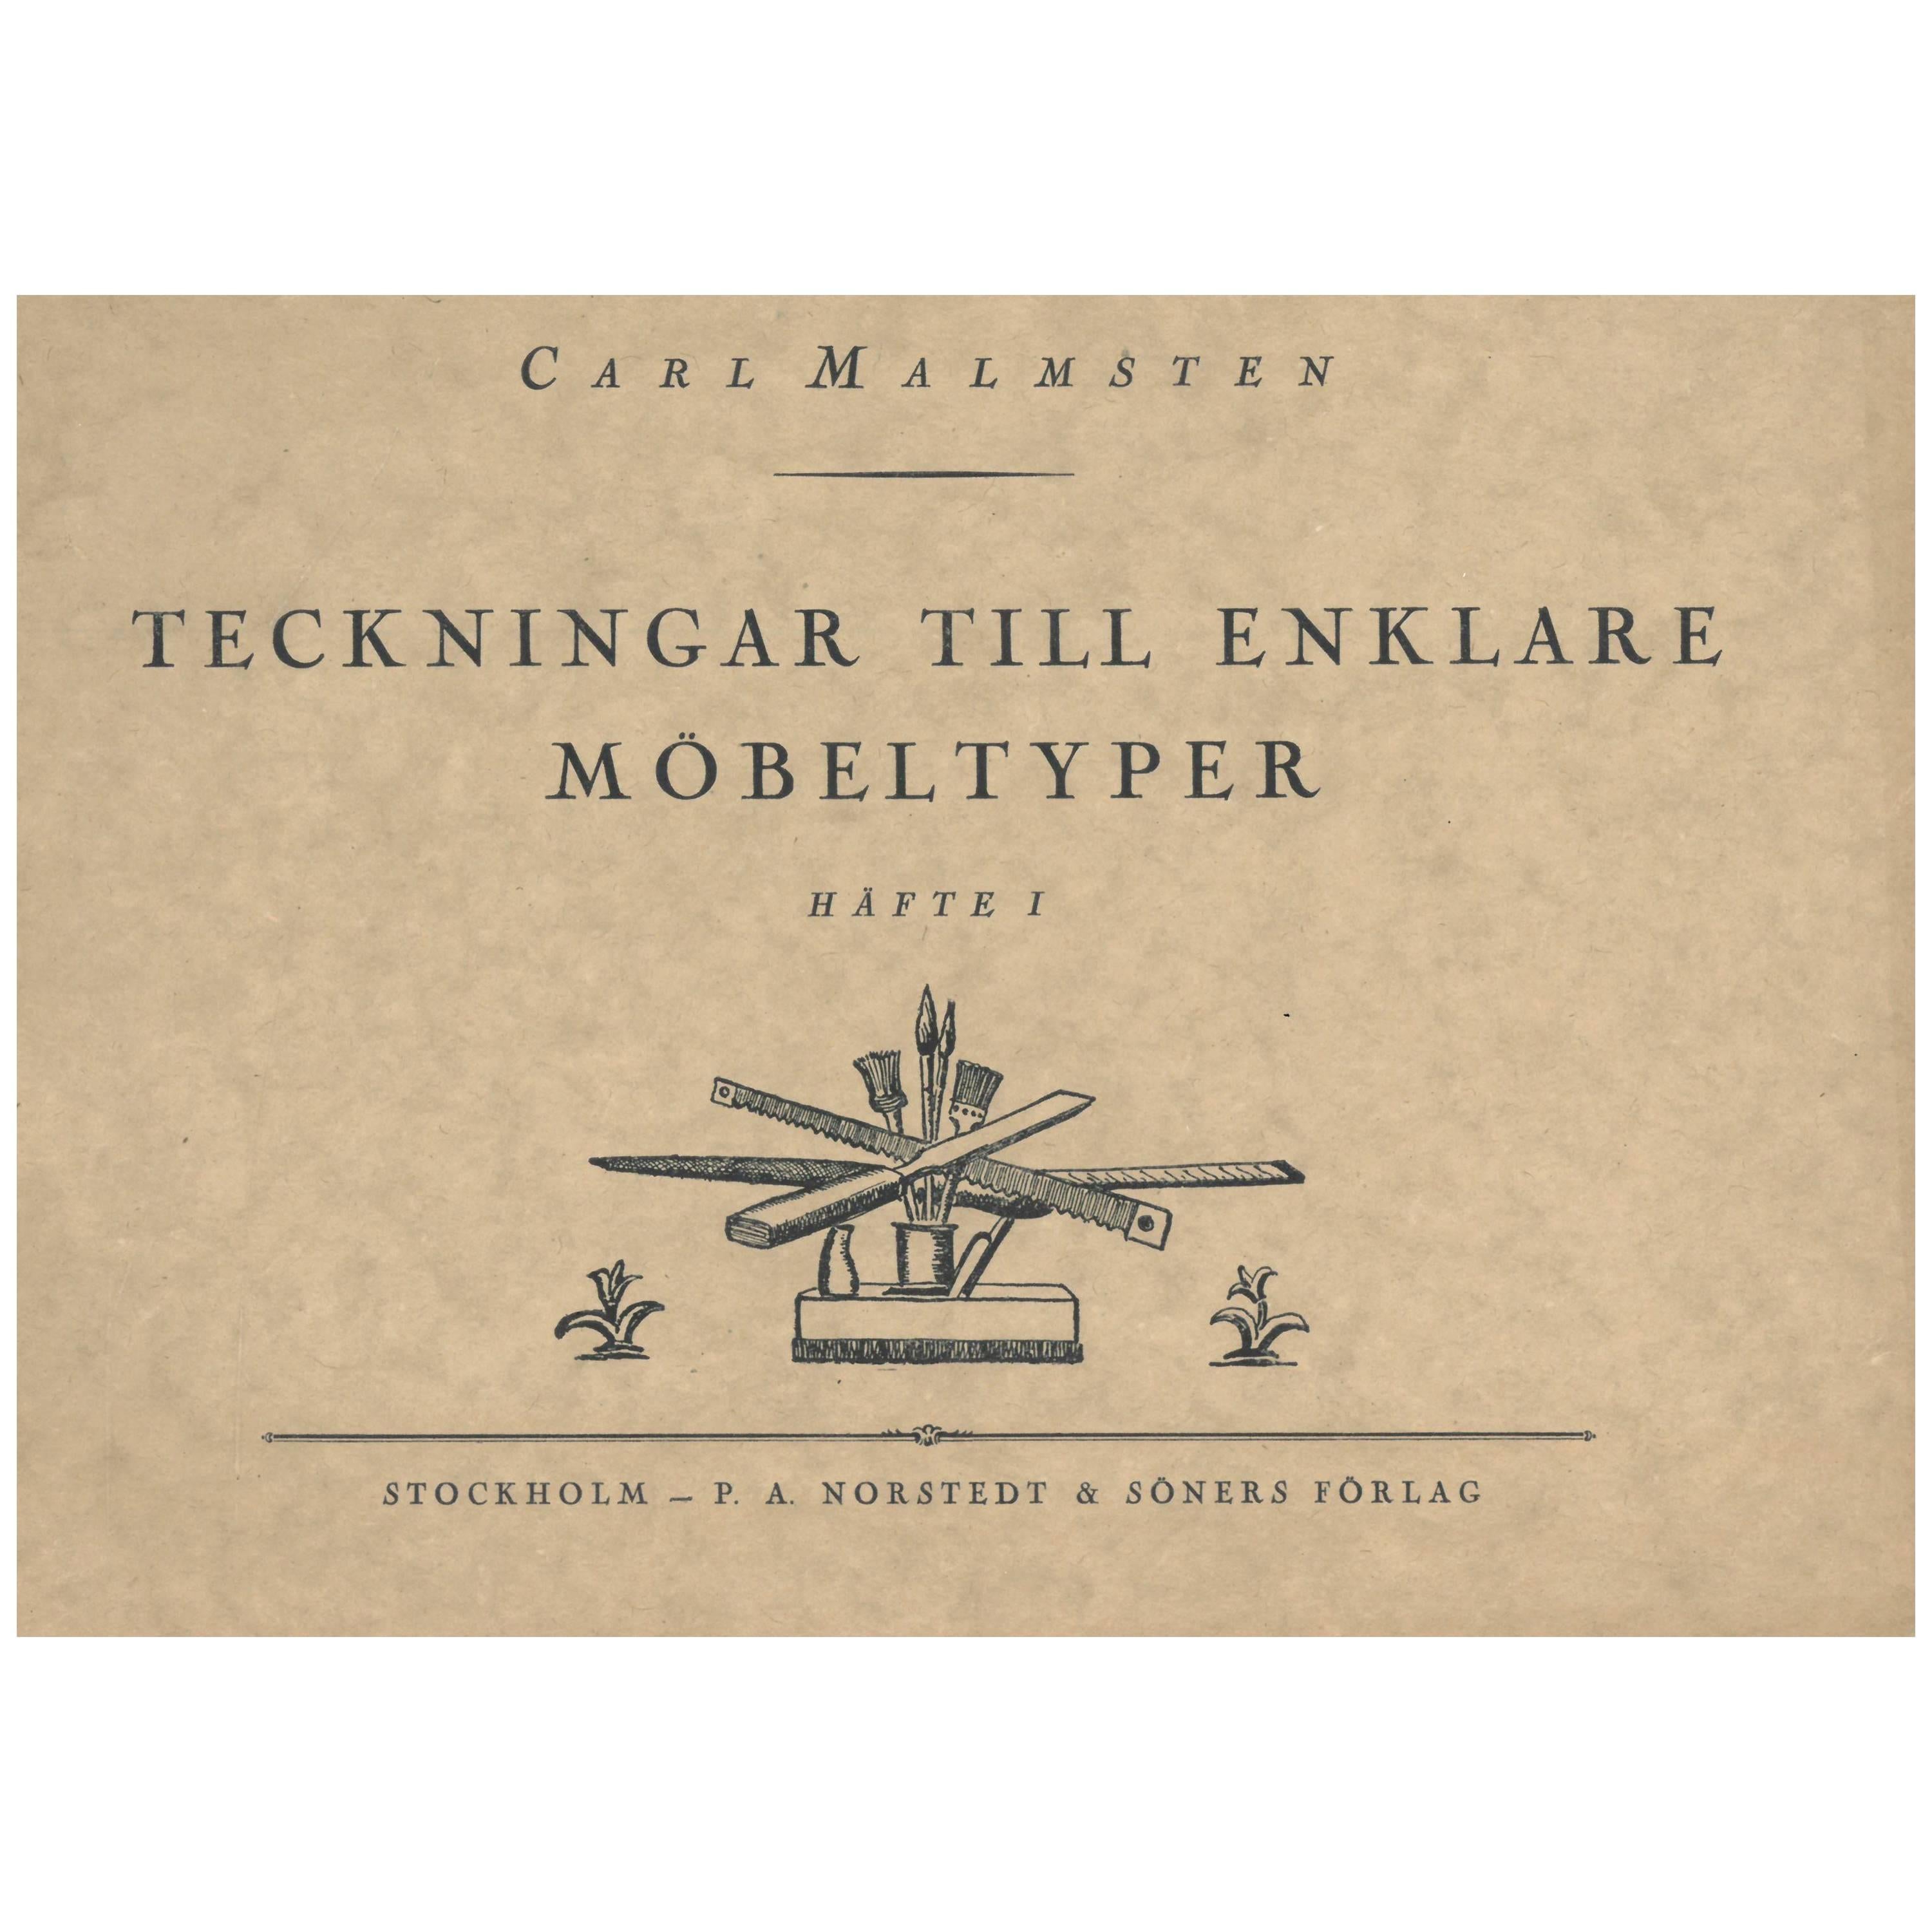 Teckningar Till Enklare Mobeltyper by Carl Malmsten 2 Volumes (Book) For Sale